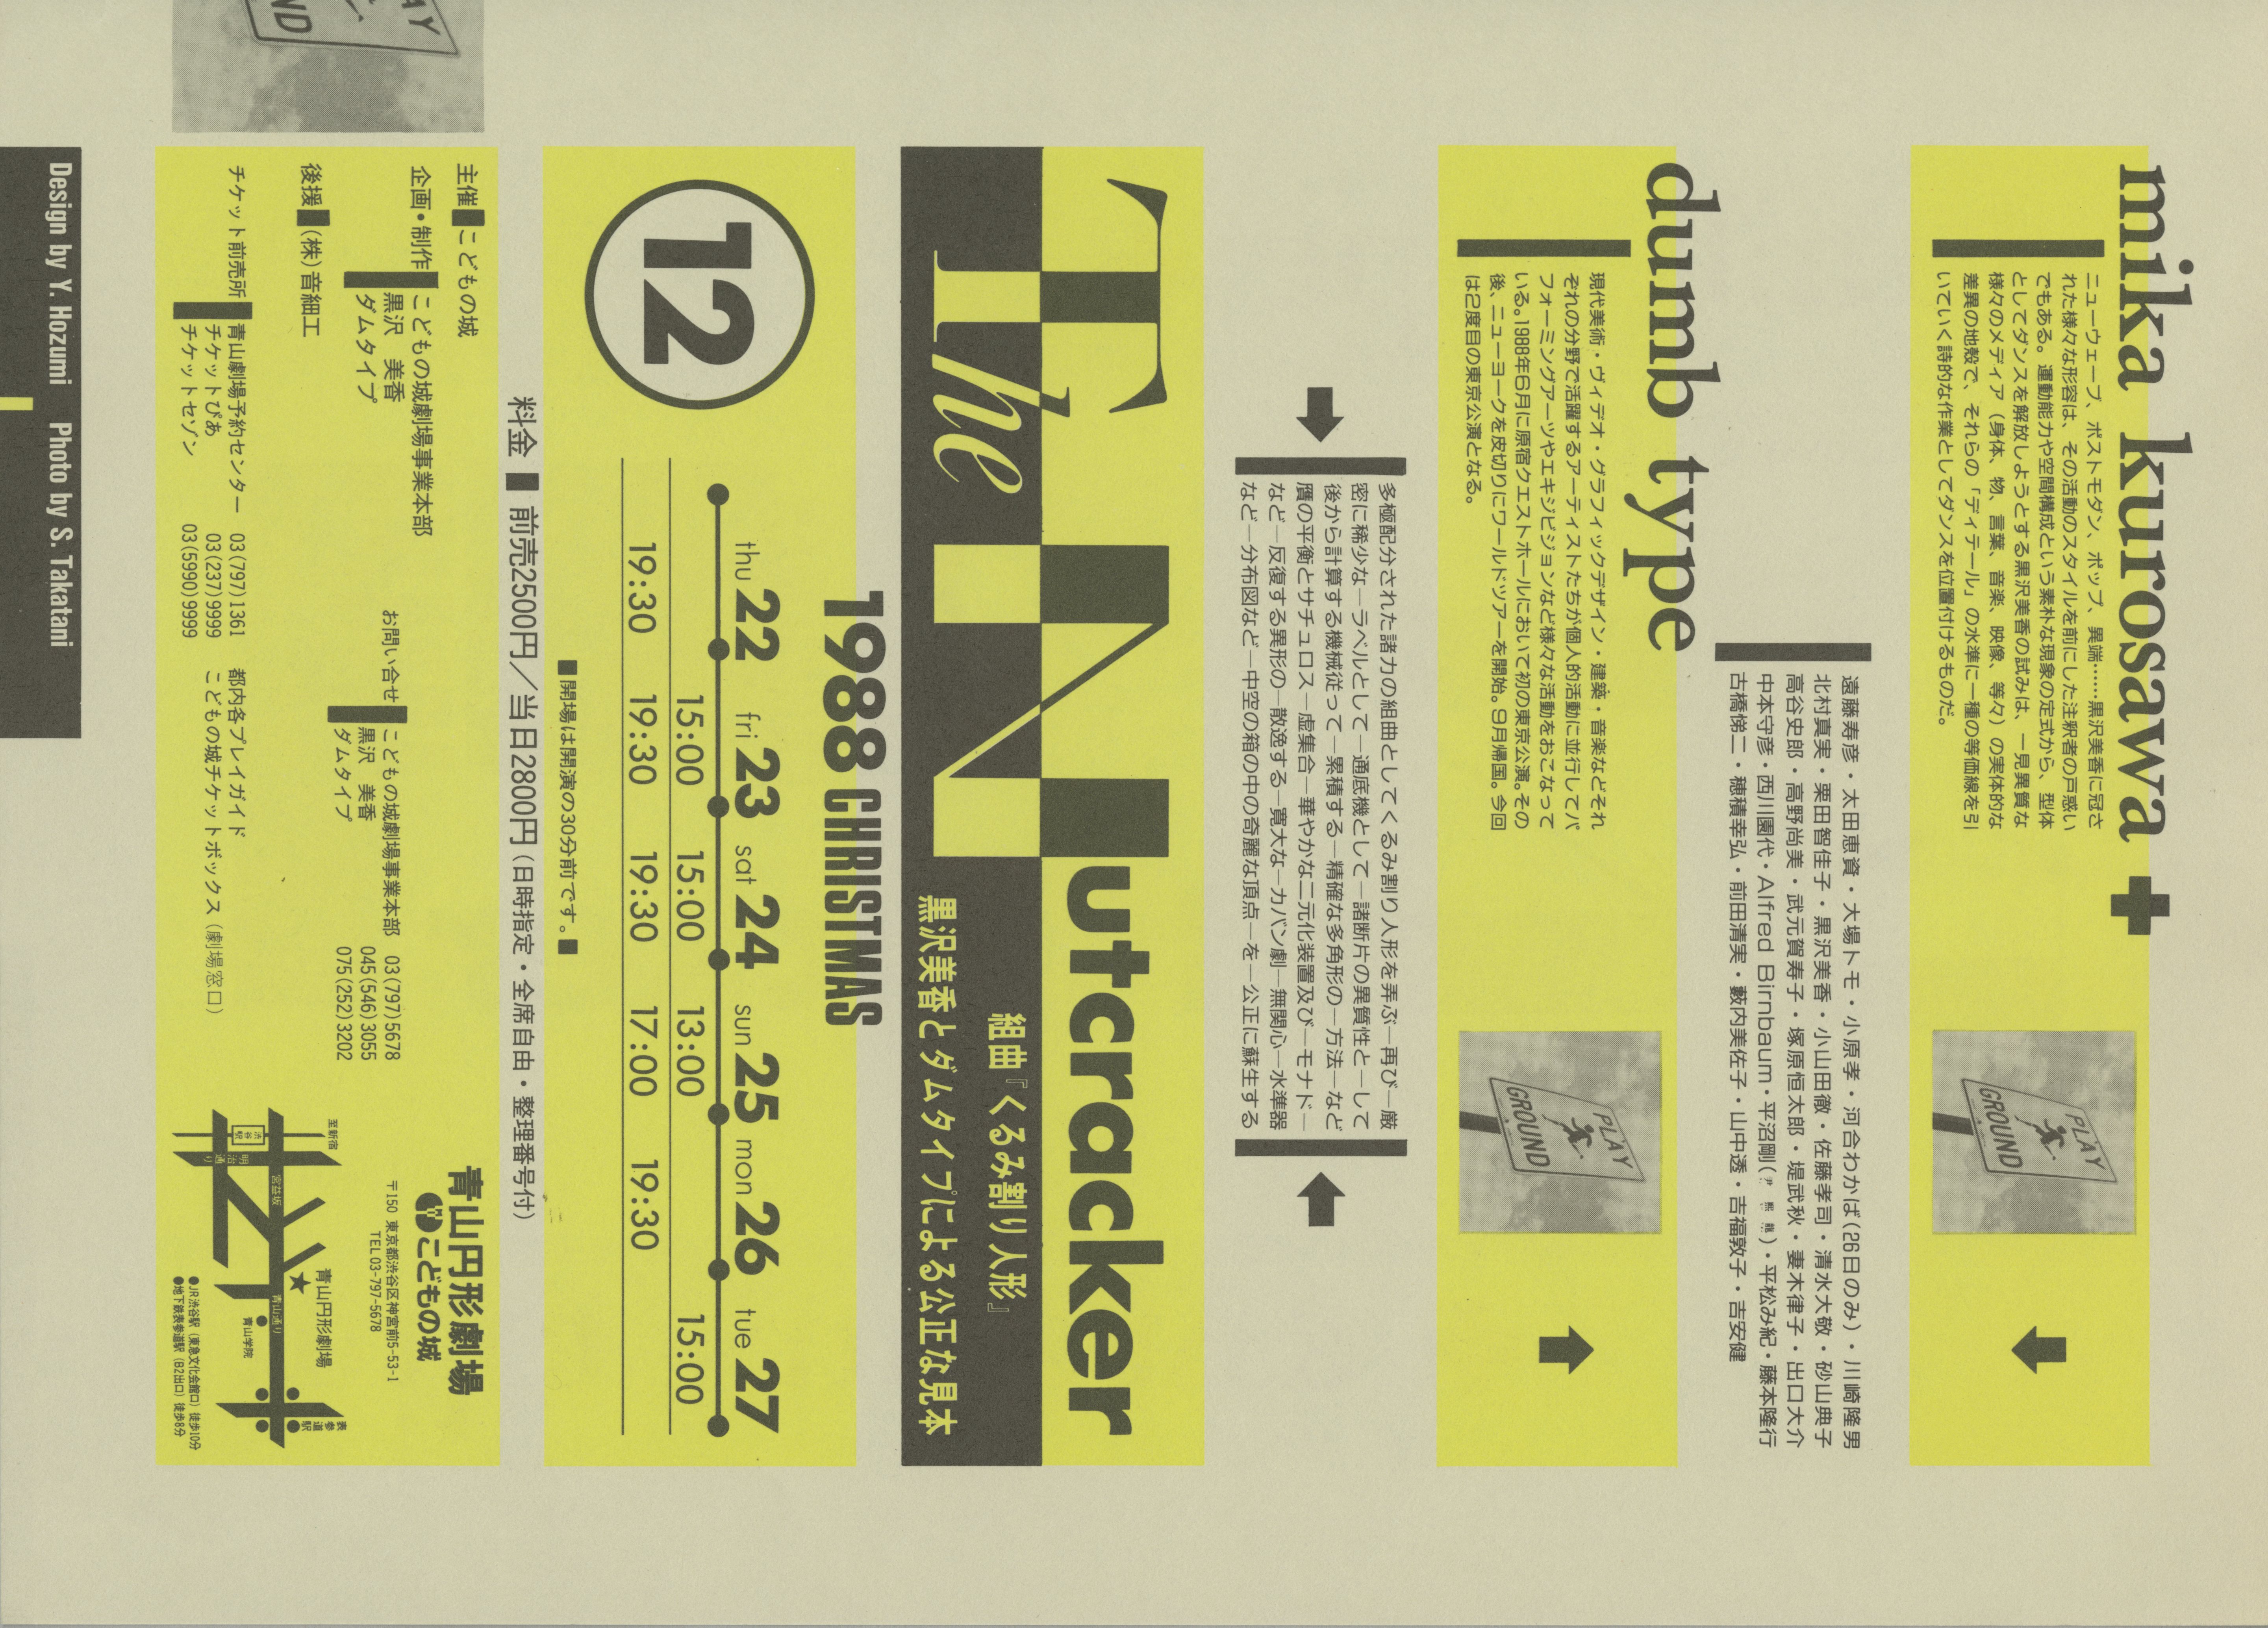 The Nutcracker 組曲『くるみ割り人形』黒沢美香とダムタイプによる公正な見本